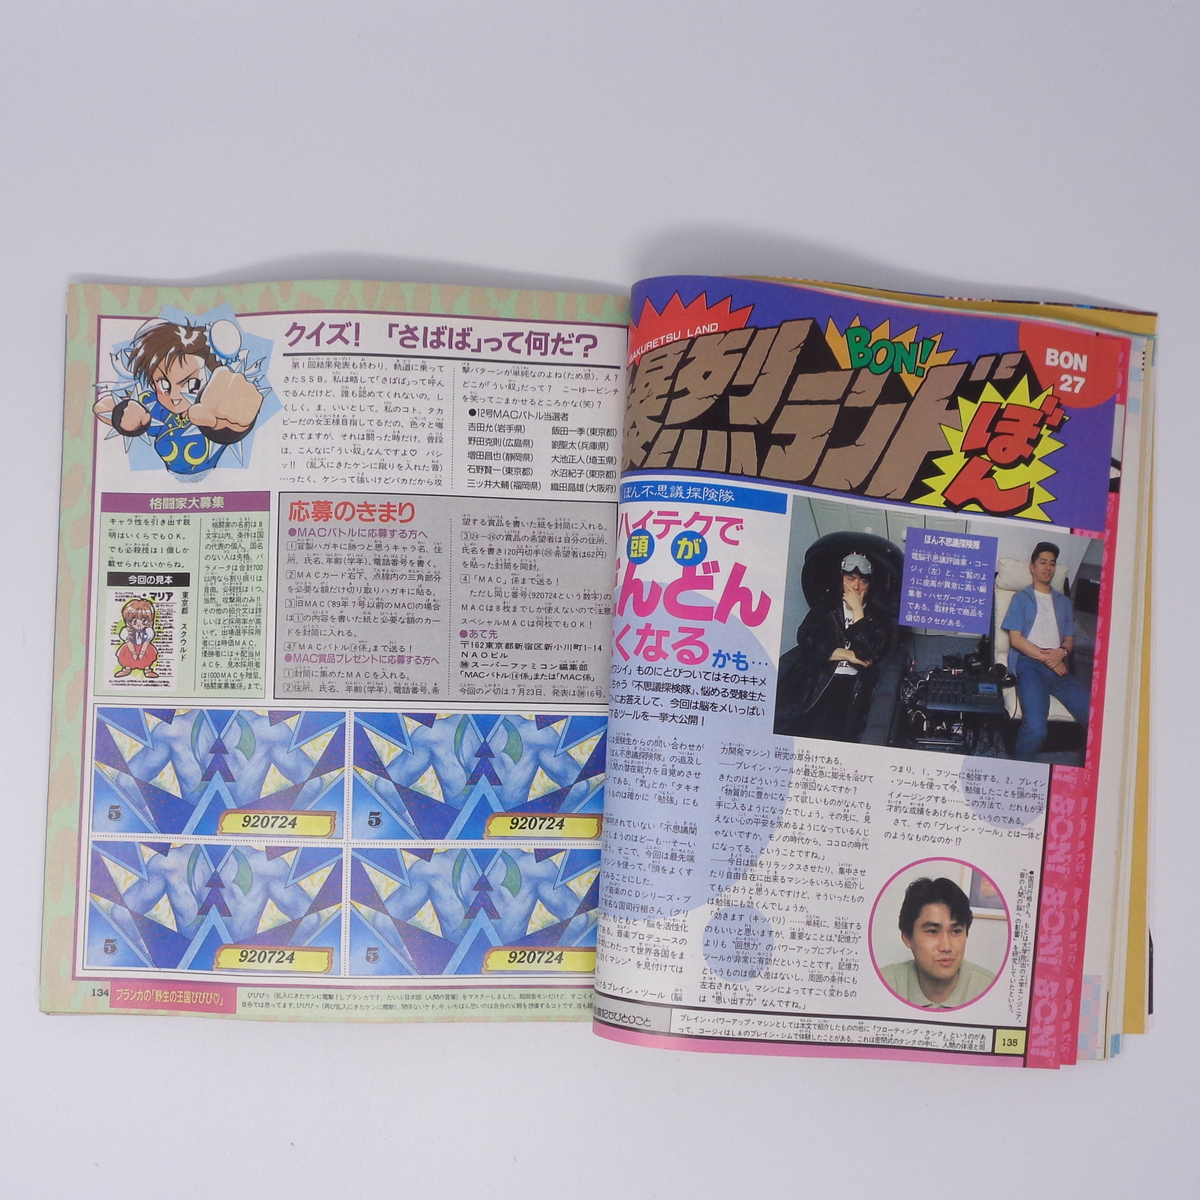 【曲がりあり】マルカツ スーパーファミコン 1992年7月24日号VOL.14 別冊付録無し/MOTHER2/ドラゴンクエスト5/ゲーム雑誌[Free Shipping] _画像10